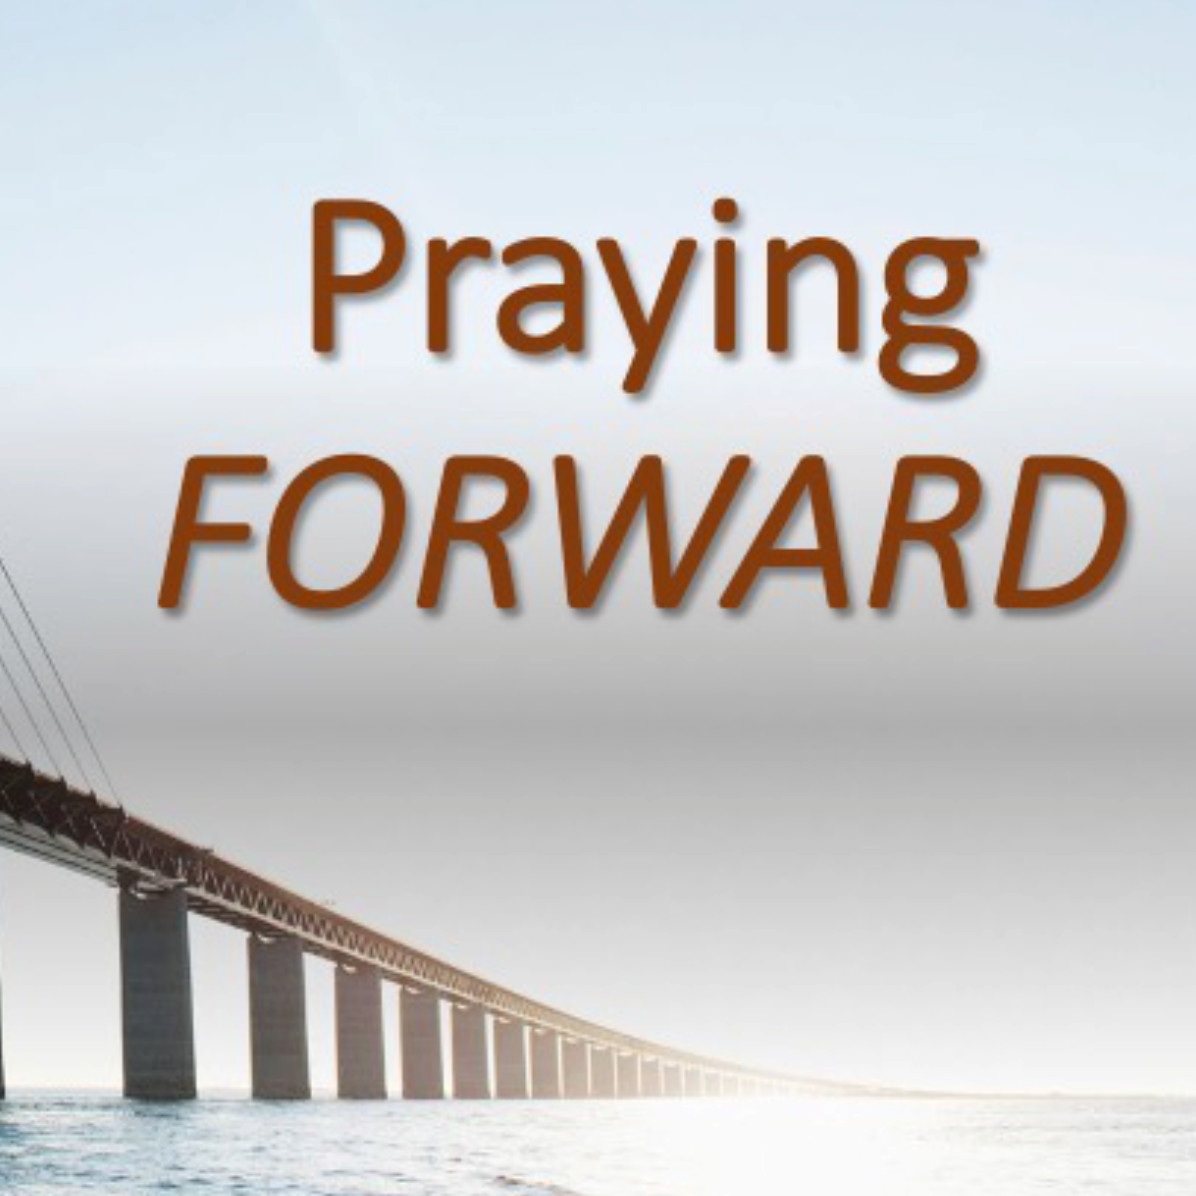 Praying Forward